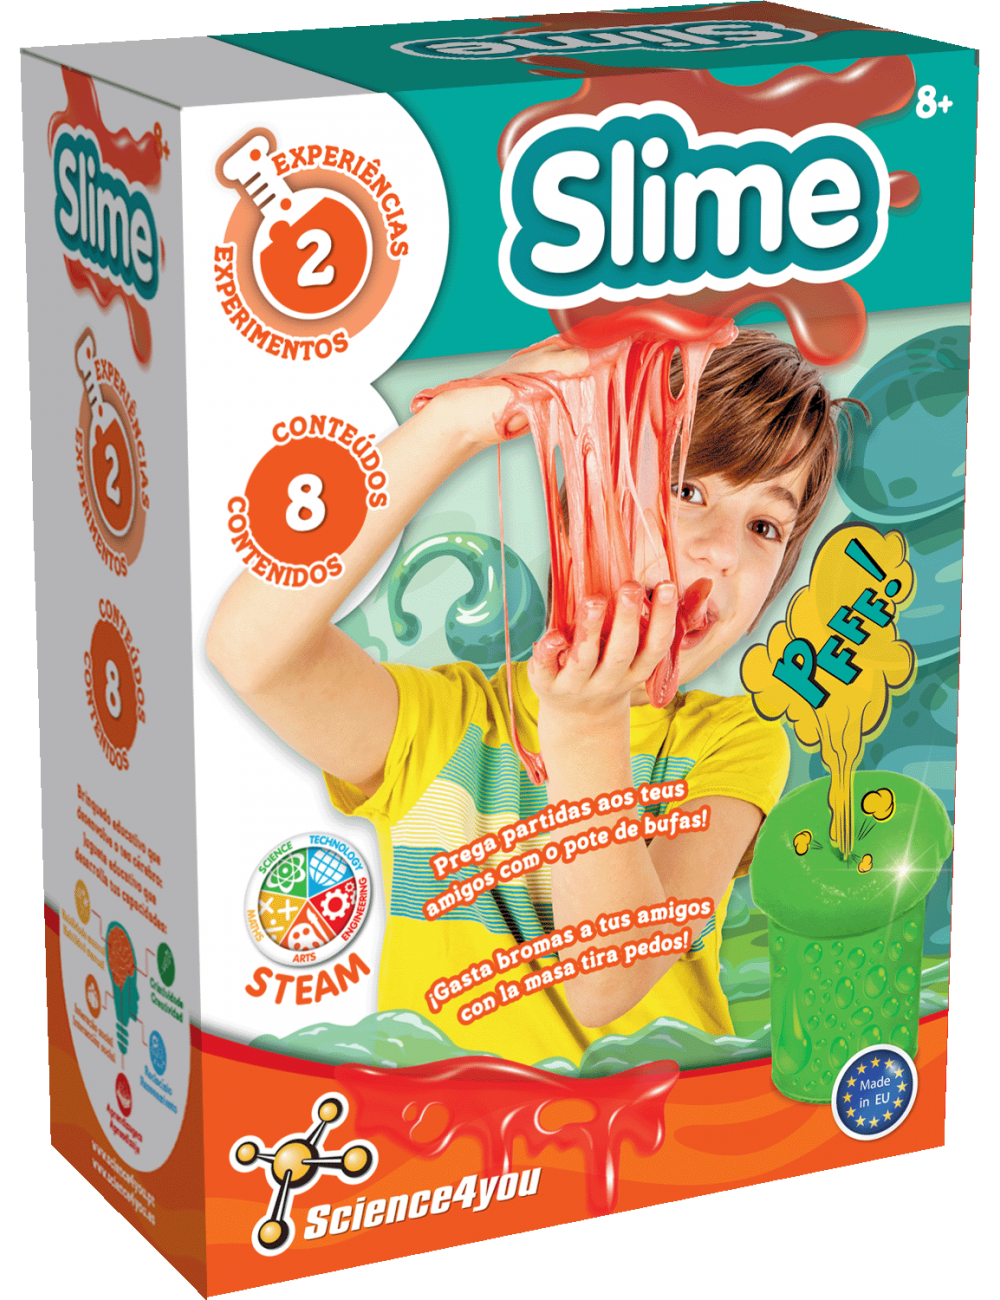 Starter Kit Slime Partidas, Brinquedo para Crianças +8 anos